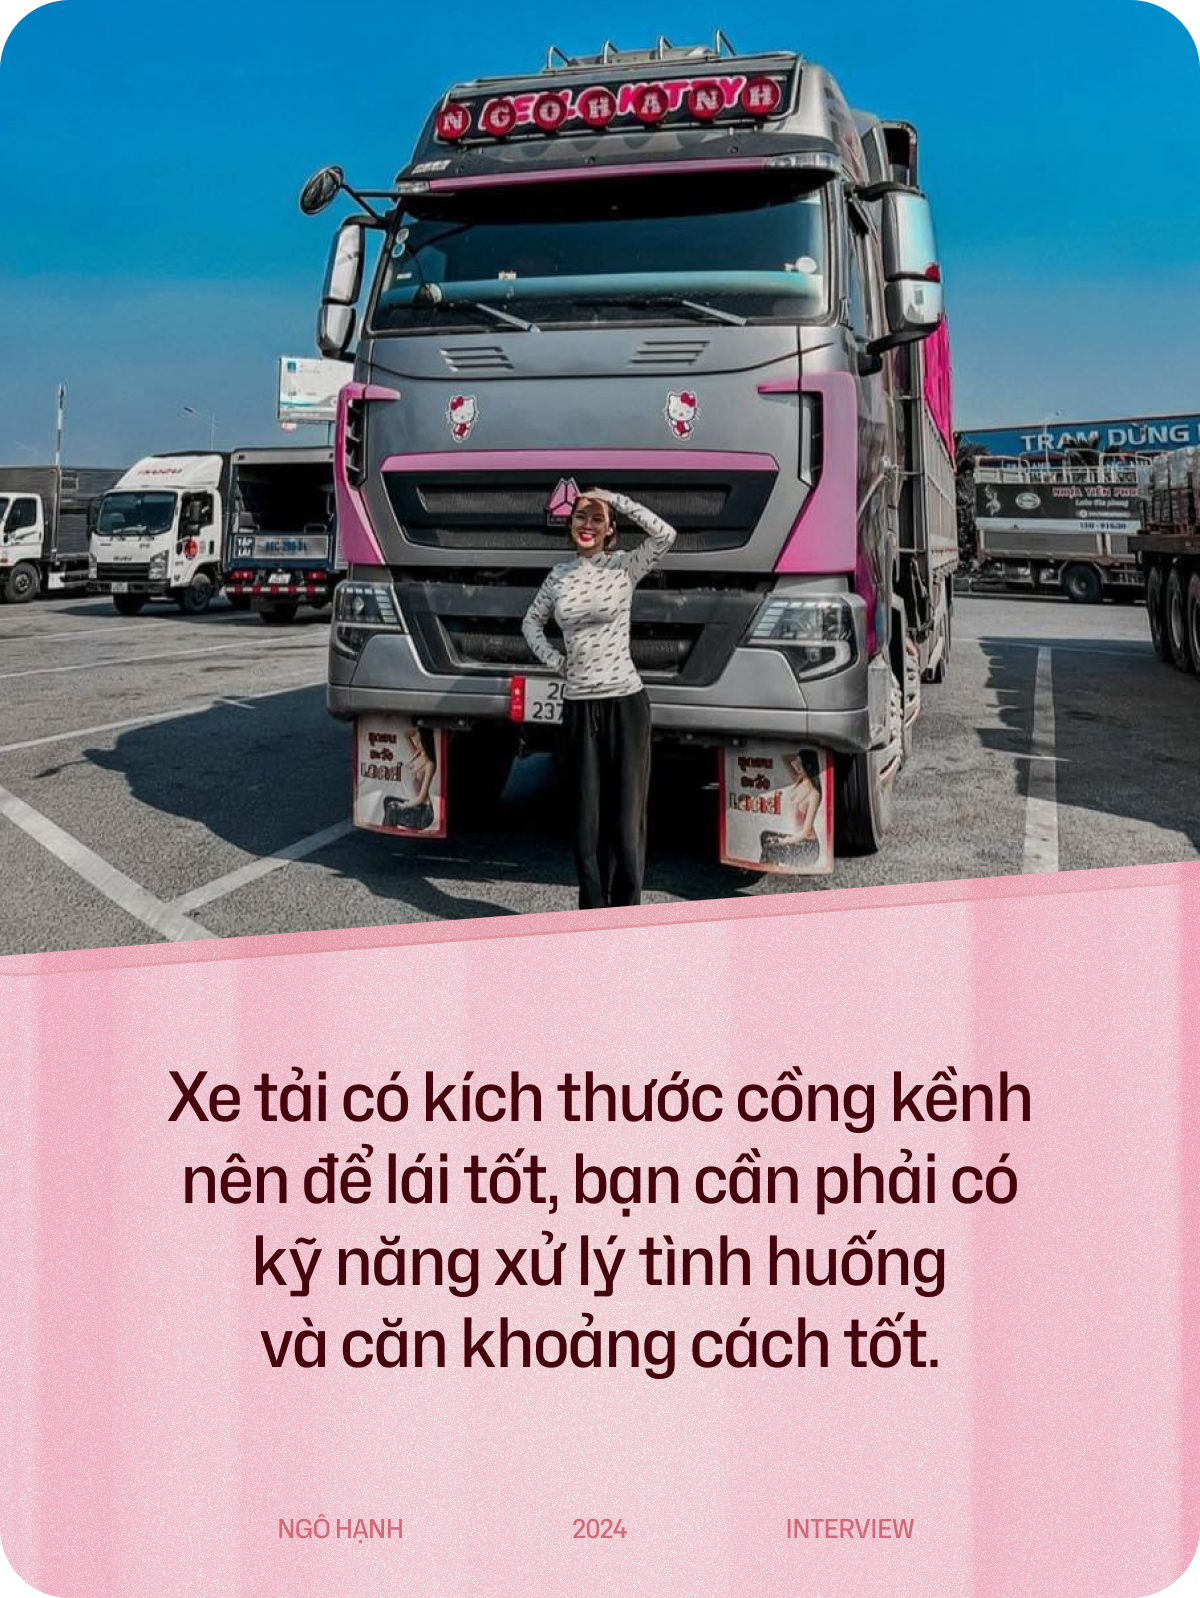 Nữ tài xế Gen Z Thái Nguyên nặng 38kg lái xe tải 30 tấn khắp miền Bắc: Thời gian mình ở trên xe còn nhiều hơn ở nhà- Ảnh 3.